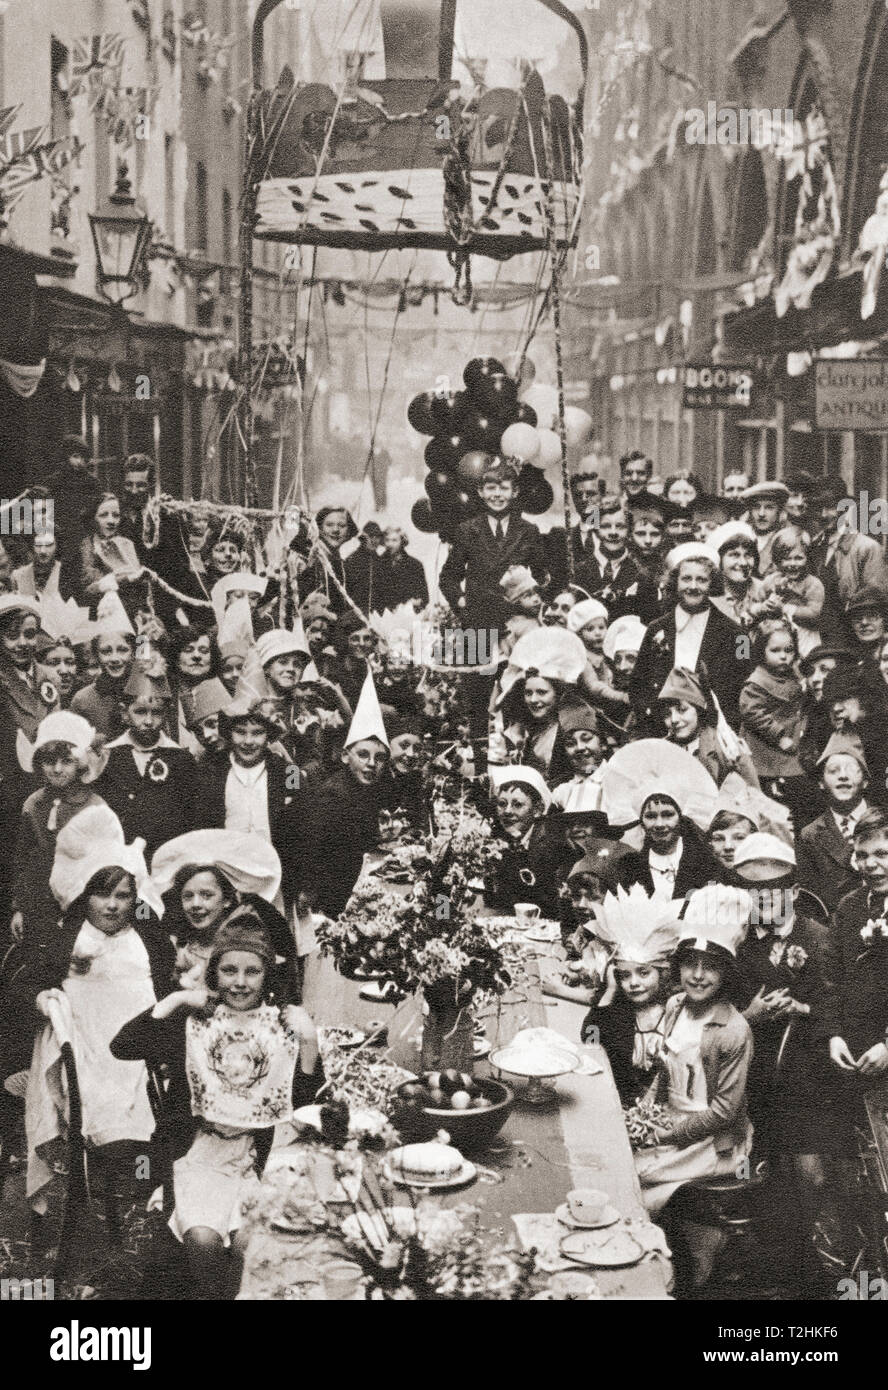 Une partie de thé typique London street. Les enfants célébrer le couronnement du roi George VI et la reine Elizabeth en 1937. Du couronnement en images, publié 1937. Banque D'Images